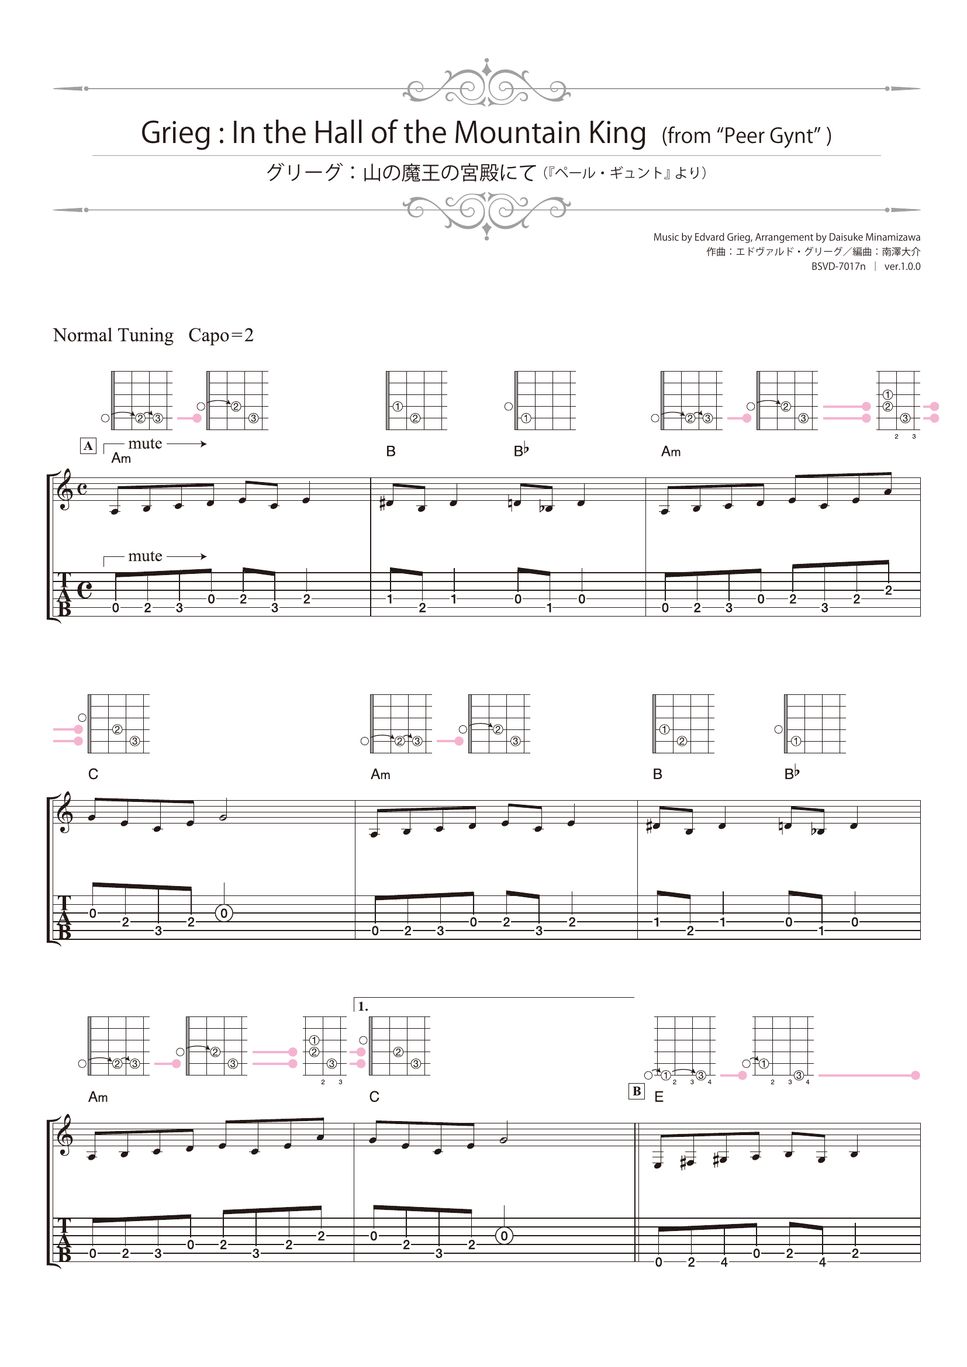 格里格 (Grieg) - 山魔王的大厅（来自《皮尔金组曲》） (指弹 吉他) by 南泽大介